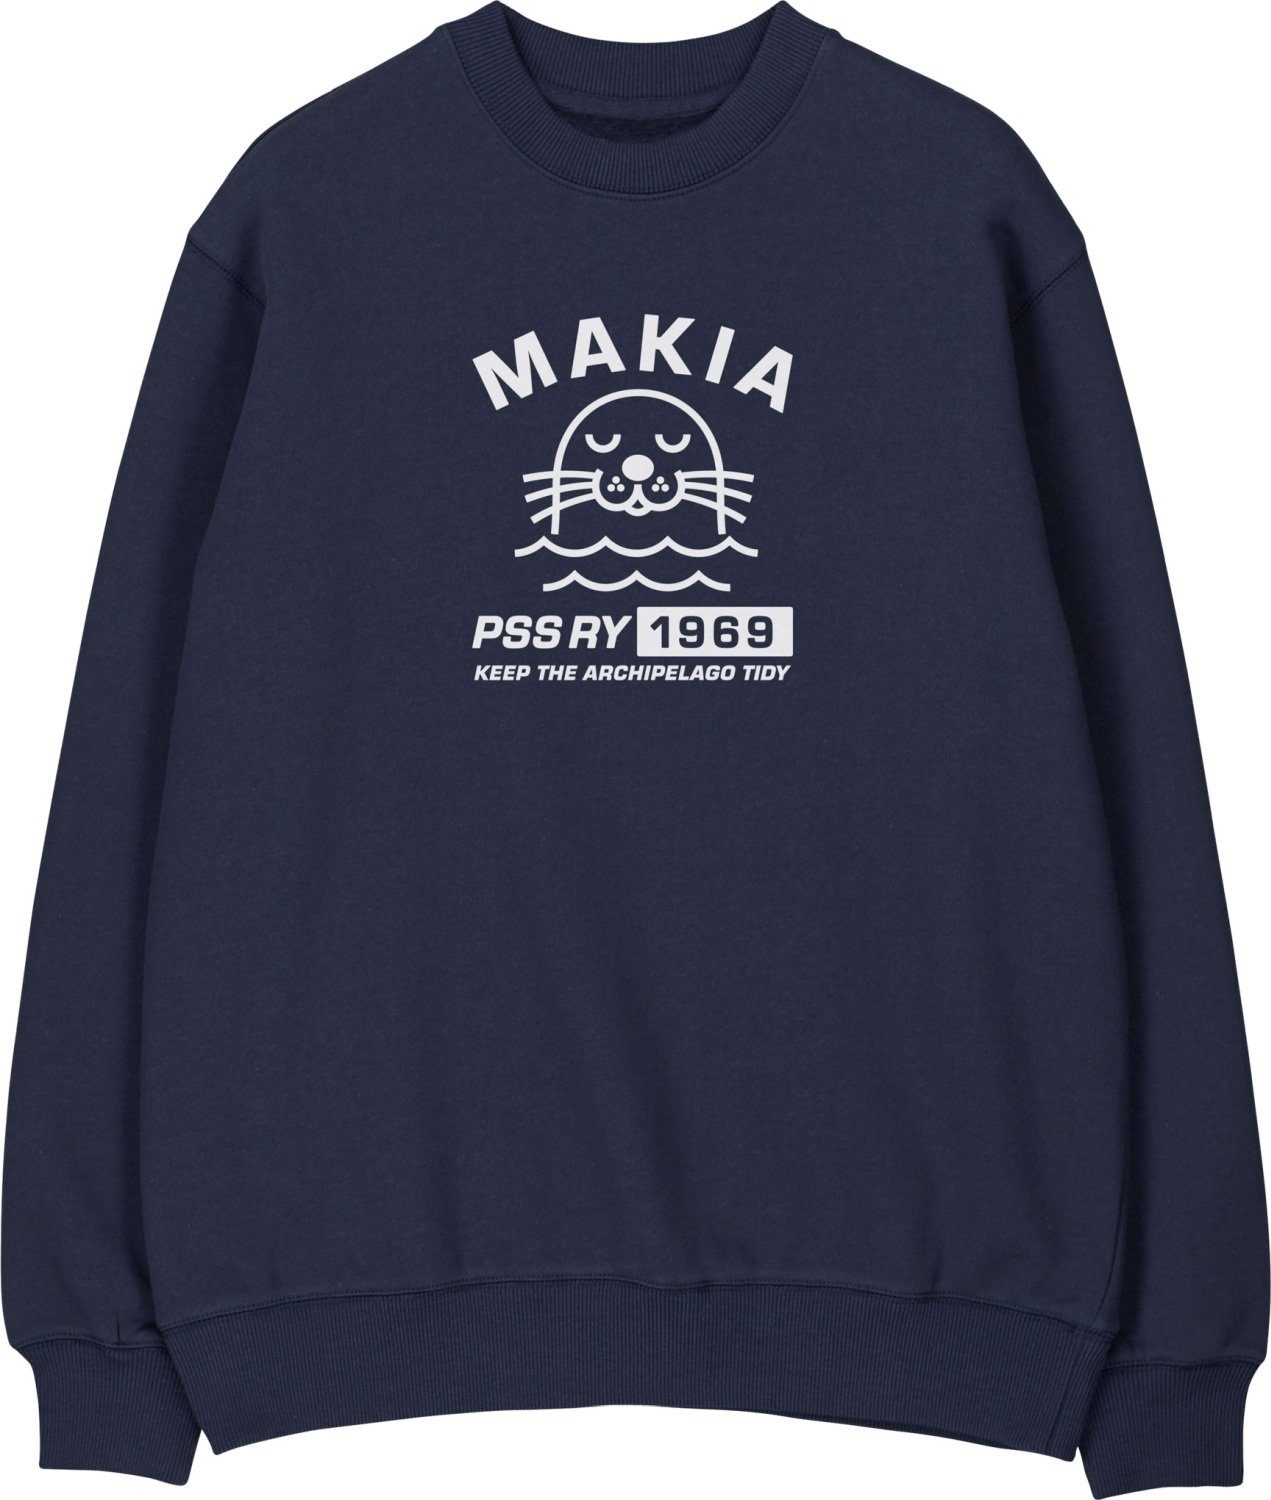 MAKIA Longsweatshirt mit & für Schären Konnus Print dunkelblau Edition Special Seen